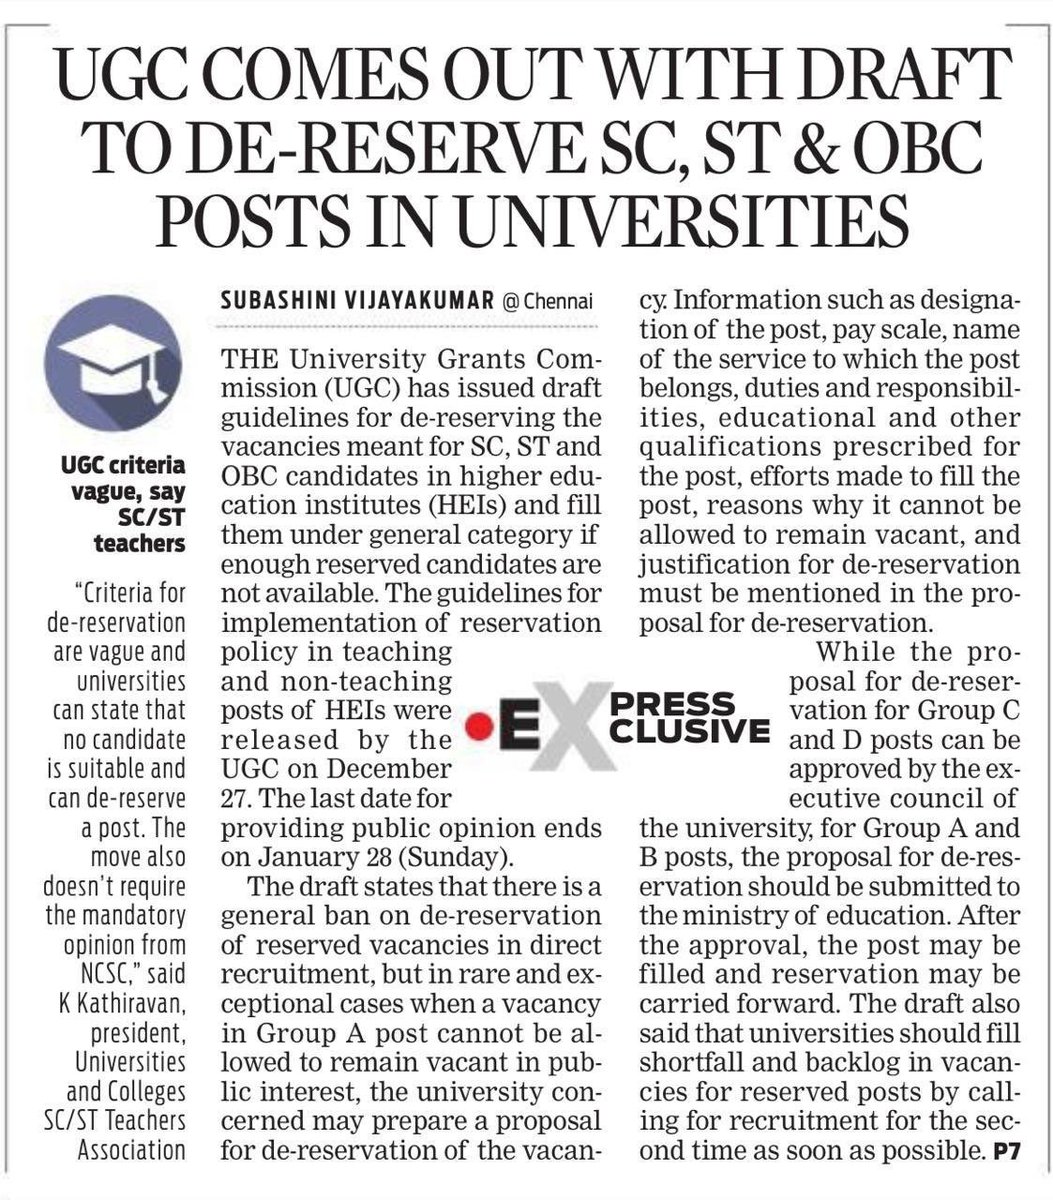 एससी, एसटी और ओबीसी के दोस्तों, एक ट्वीट अपने लिए भी कर लो। #Casteist_UGC